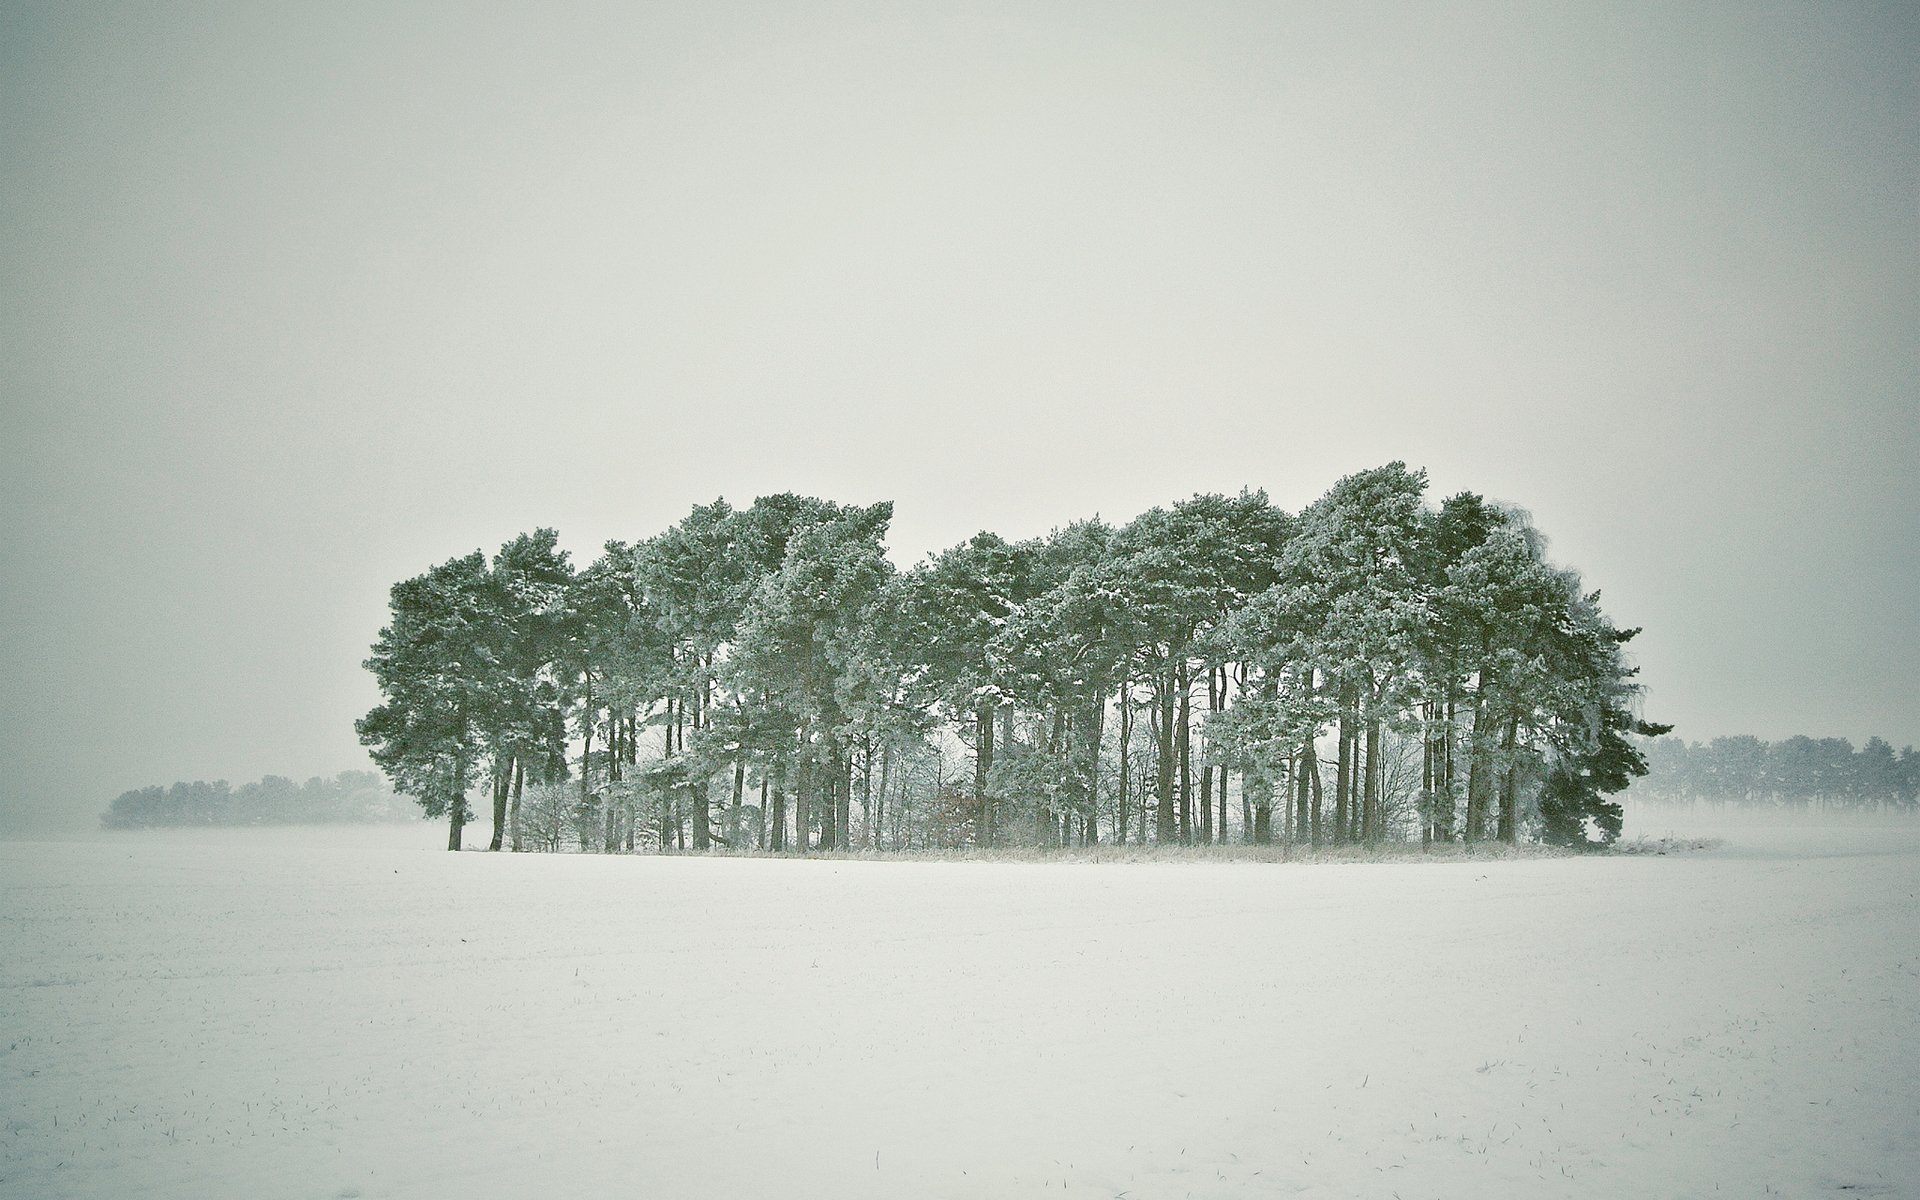 зима снег деревья лес метель заснежено